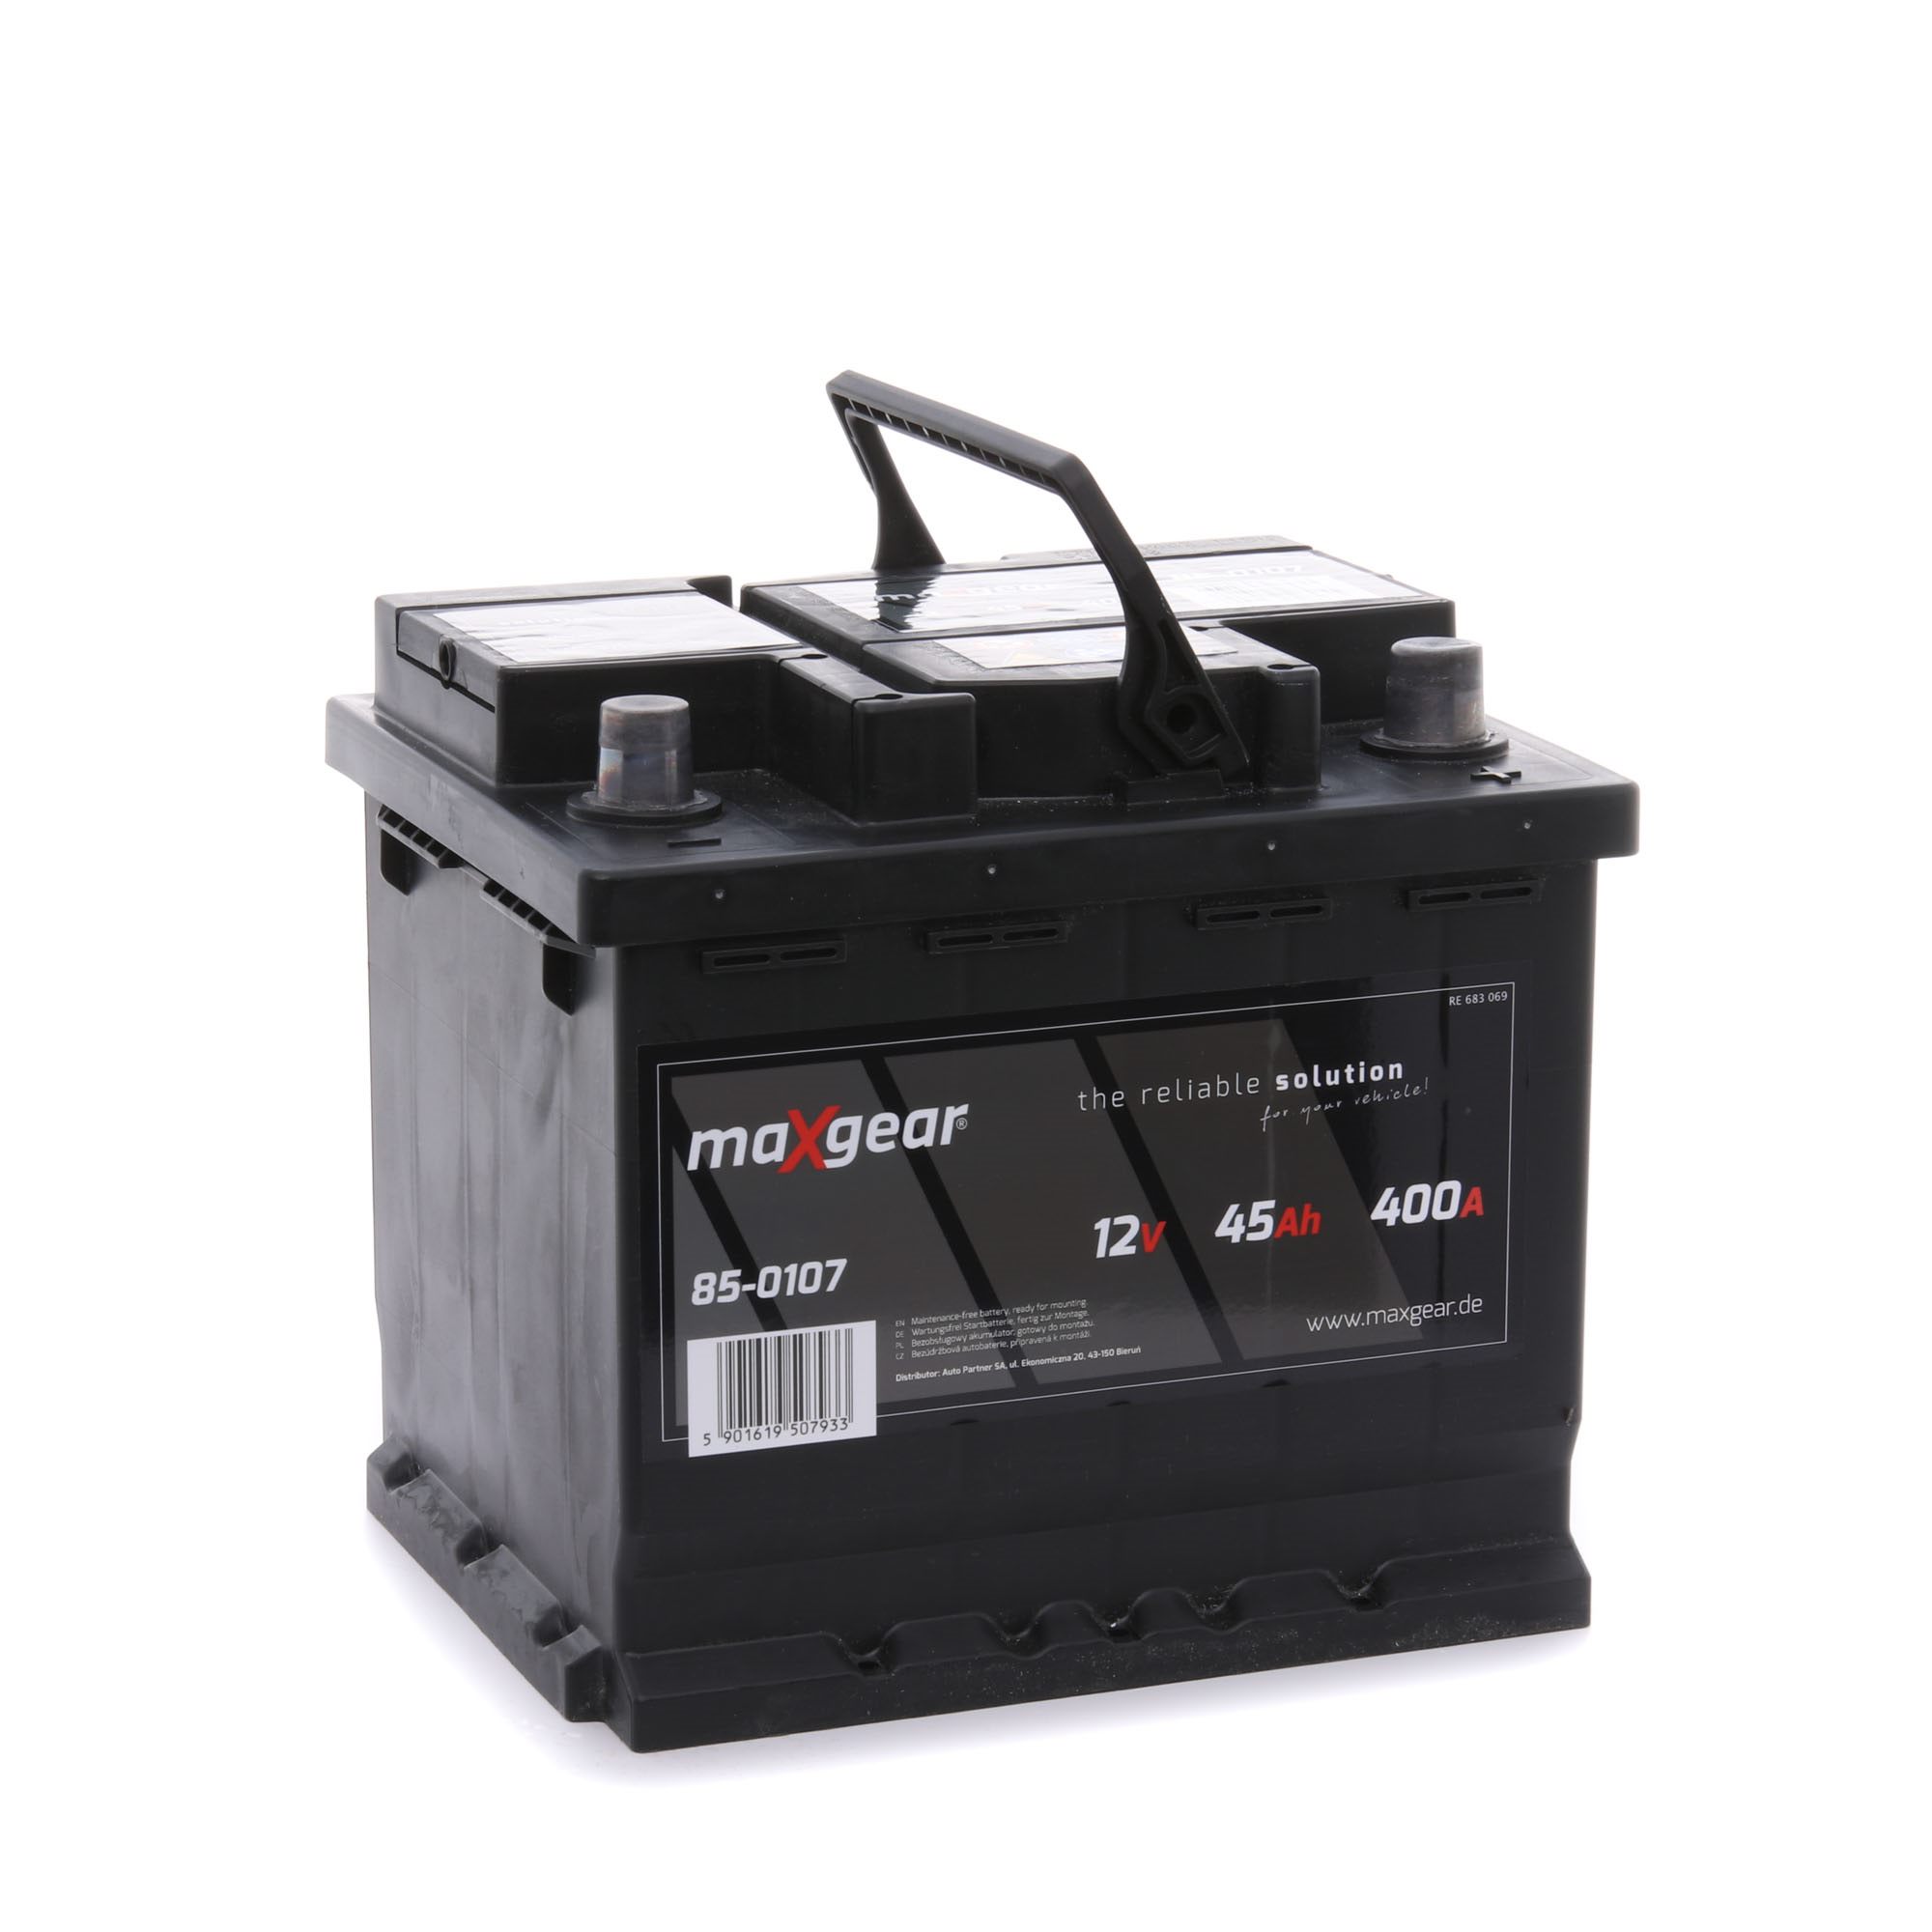 MAXGEAR 545 412 040 Battery 12V 45Ah 400A B13 Lead-acid battery